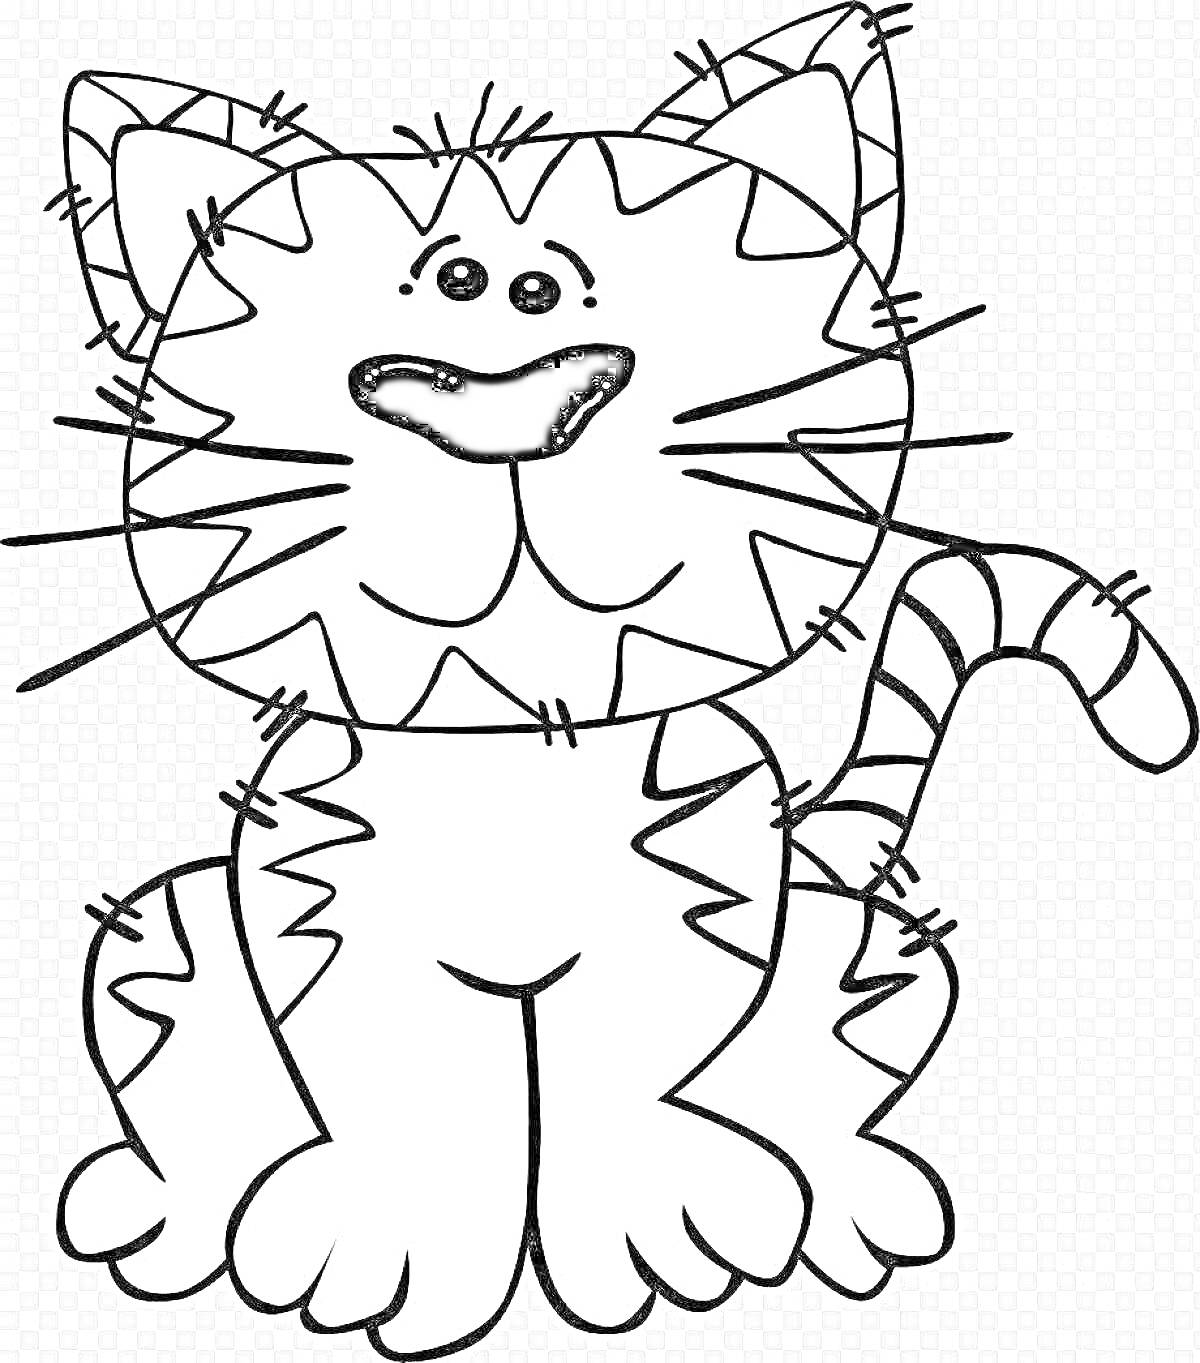 Раскраска Контурное изображение сидящего кота с полосками и милой мордочкой